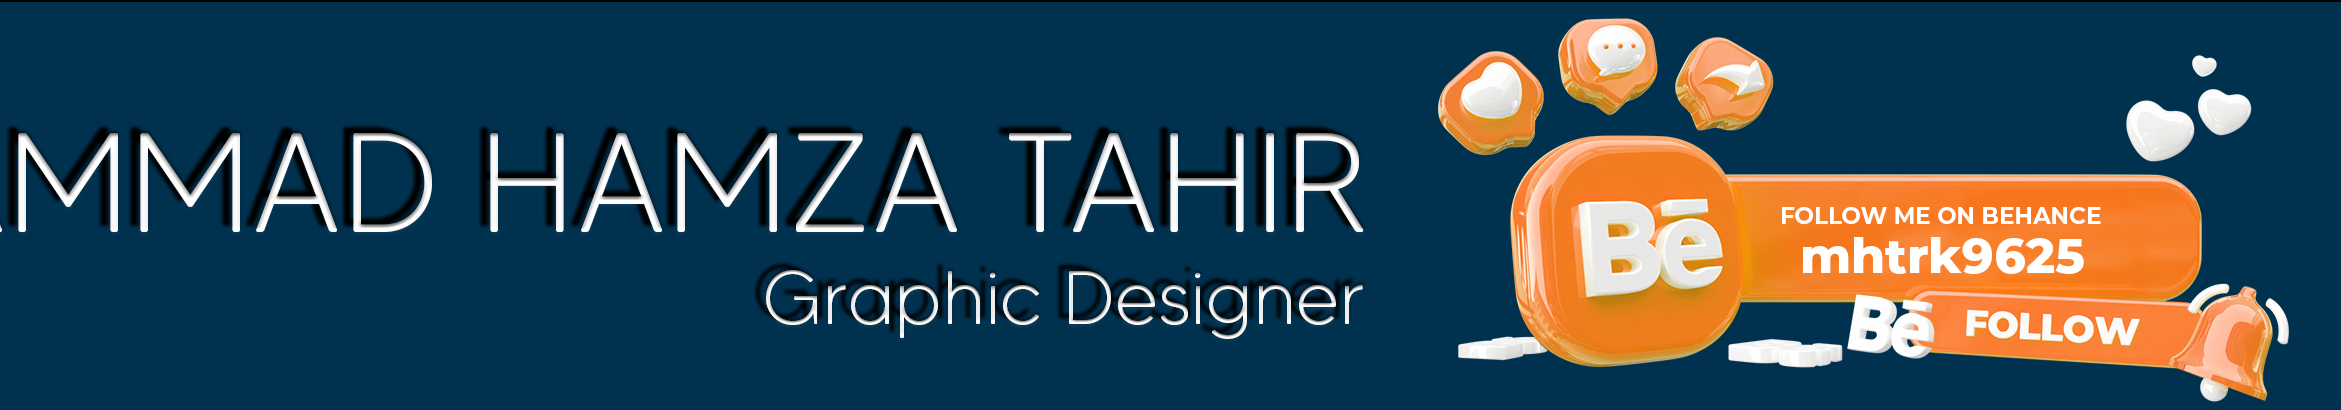 Banner profilu uživatele Muhammad Hamza Tahir